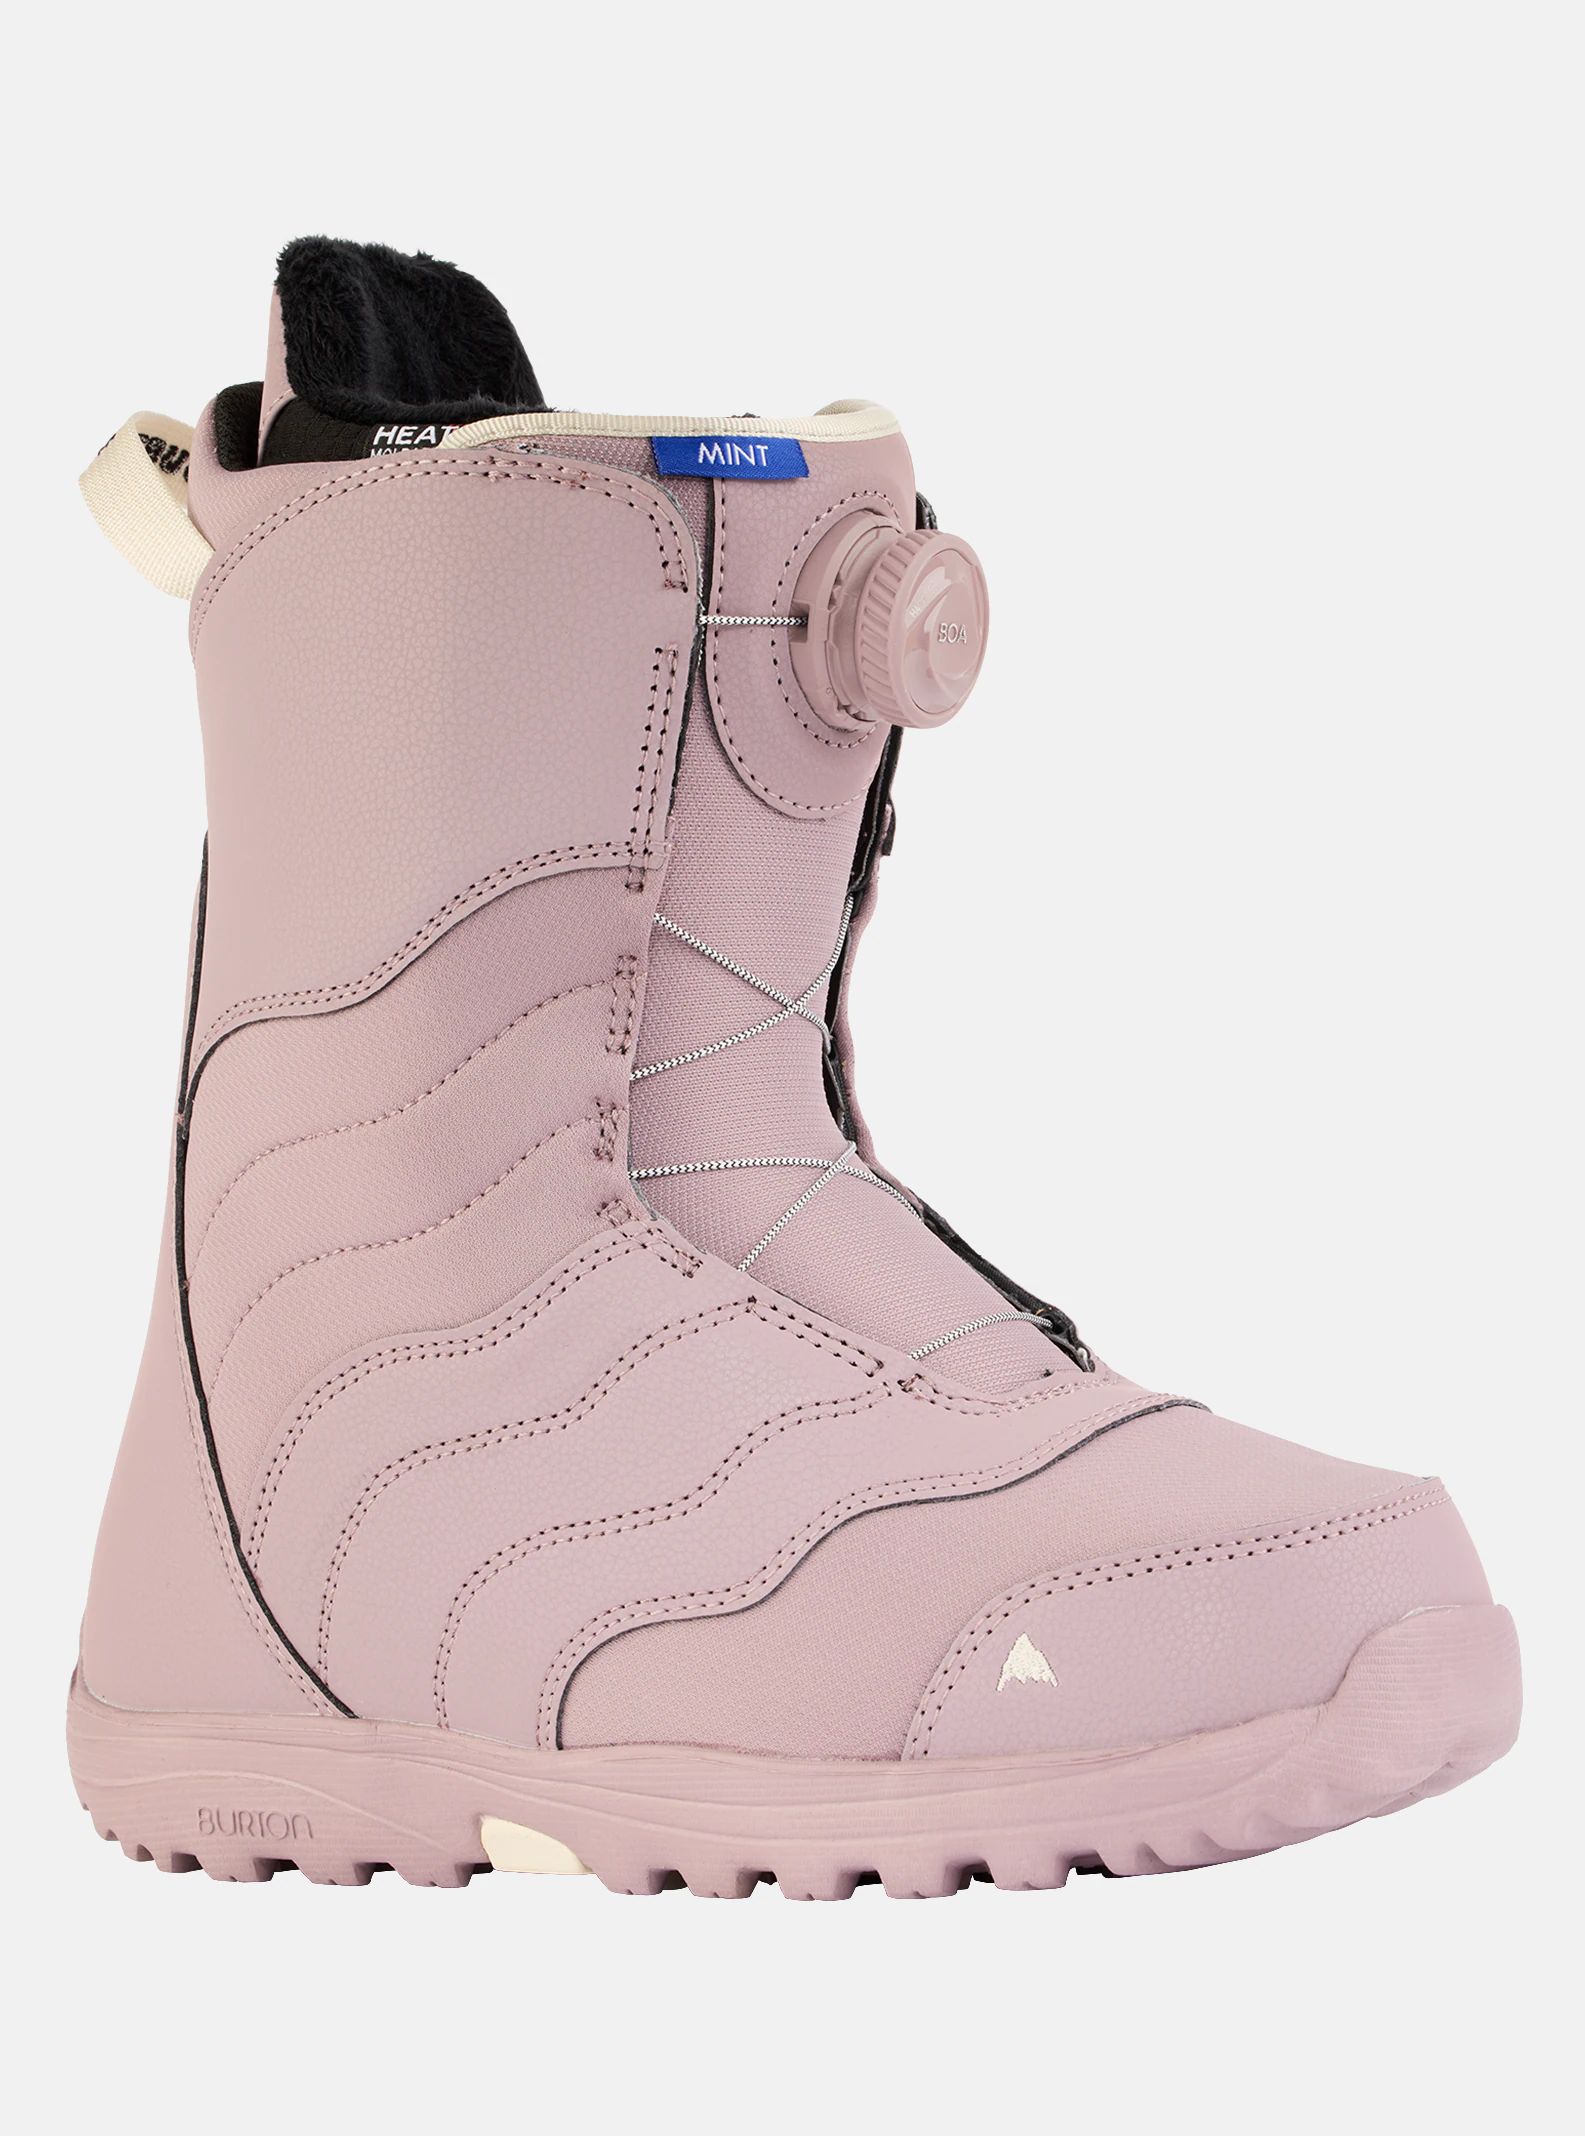 Women's Burton Mint BOA® Snowboard Boots | Burton Snowboards Canada